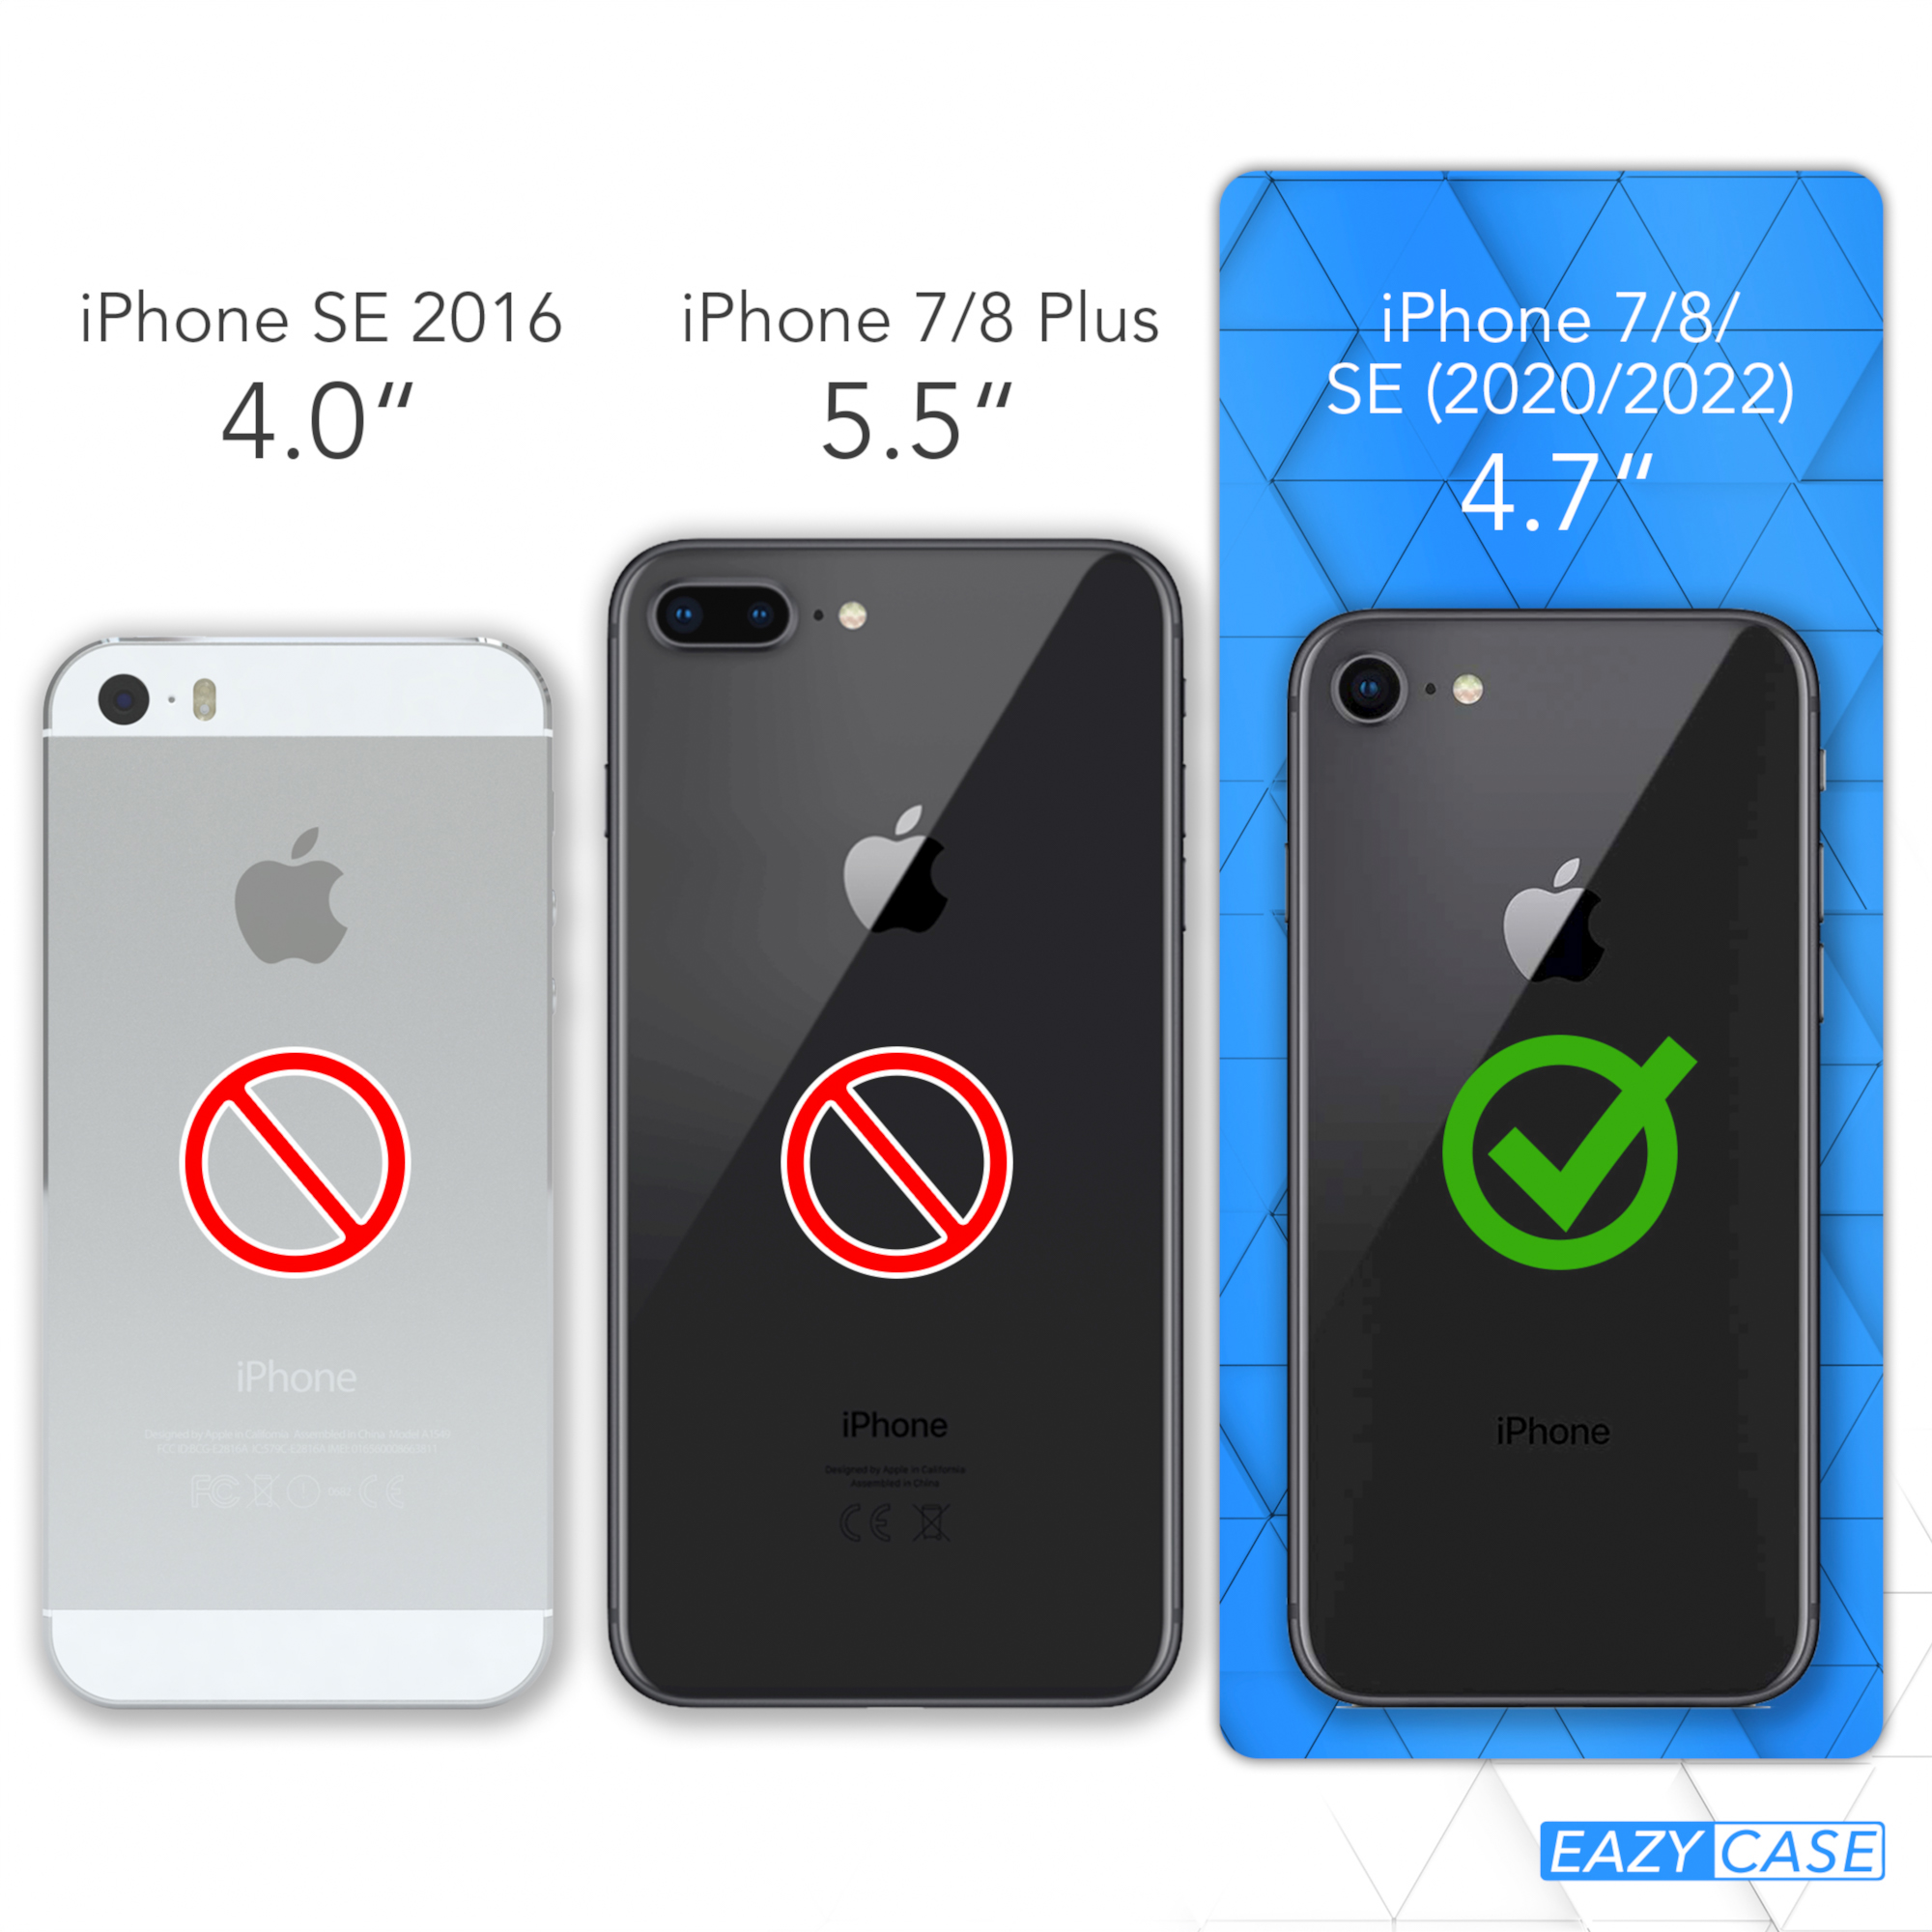 EAZY CASE Transparente Handyhülle mit iPhone 2020, 8, / / + Bordeaux Umhängetasche, iPhone 7 Apple, / Gold runder SE Karabiner, SE Kordel 2022